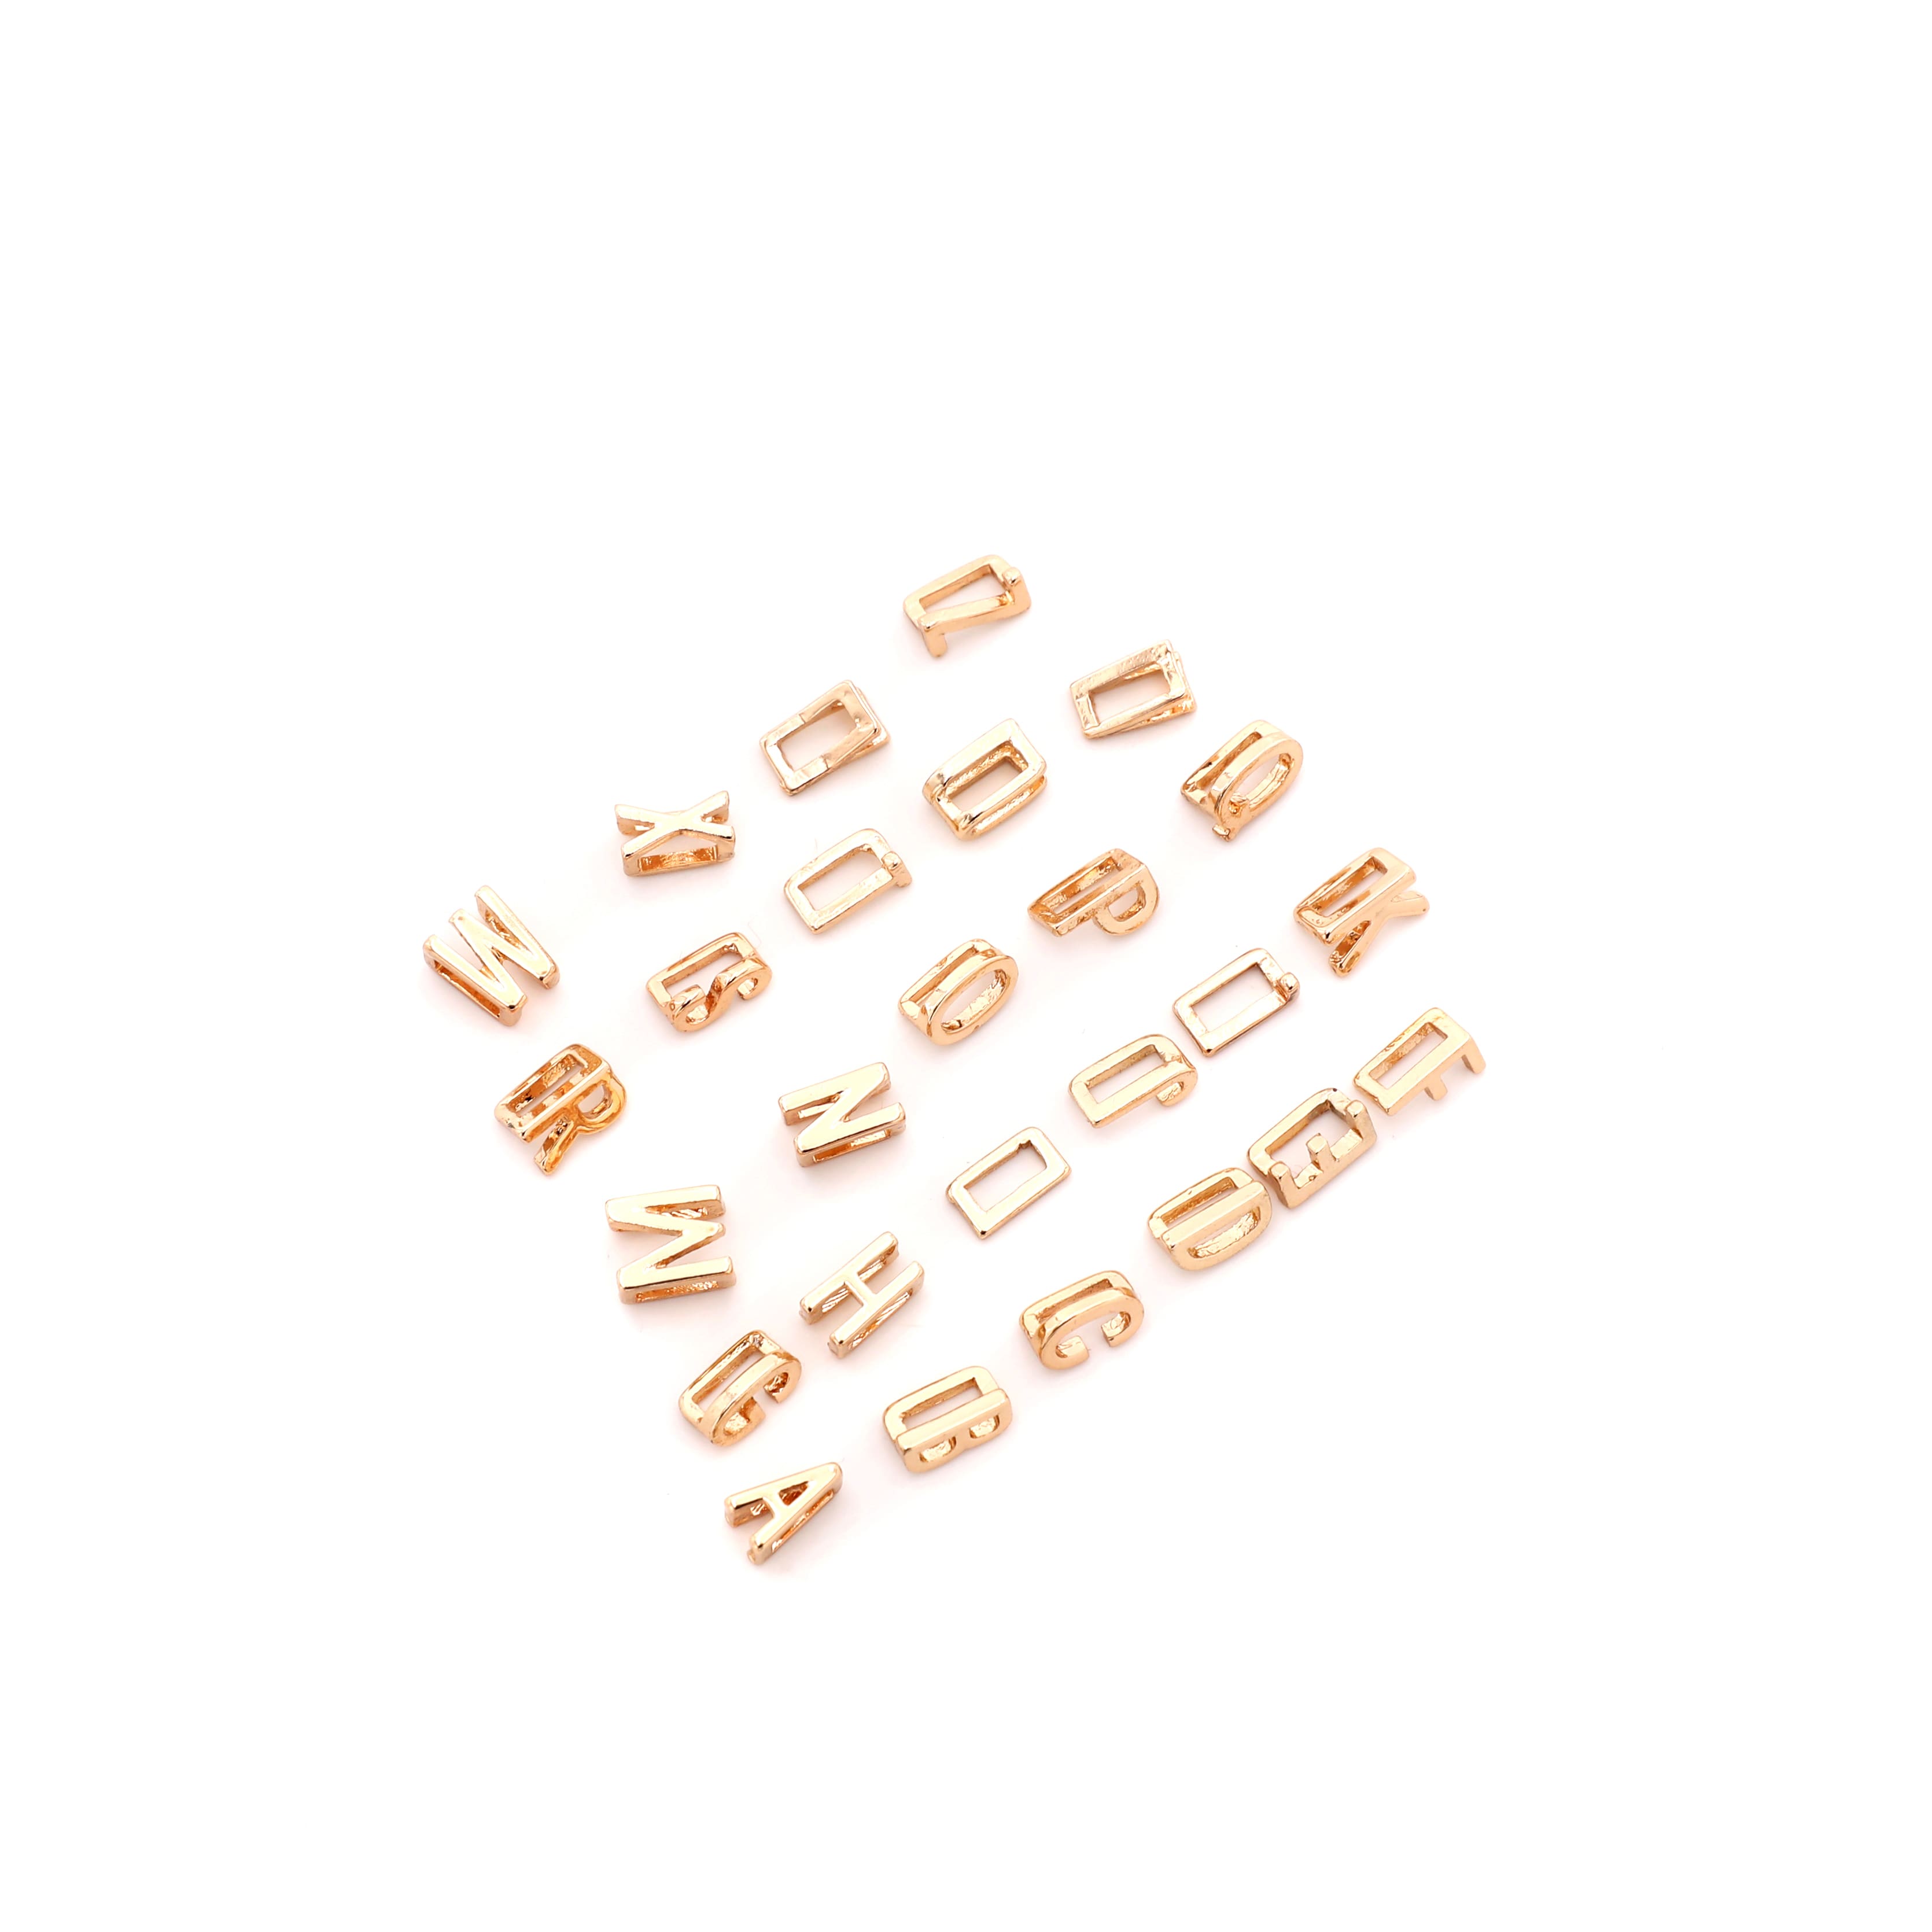 Pukido Letter/Alphabet Rectangle Alloy Antique Bronze Hole Charm Beads 100pcs/lot fit Bracelet 11mm XZ02 Color: T